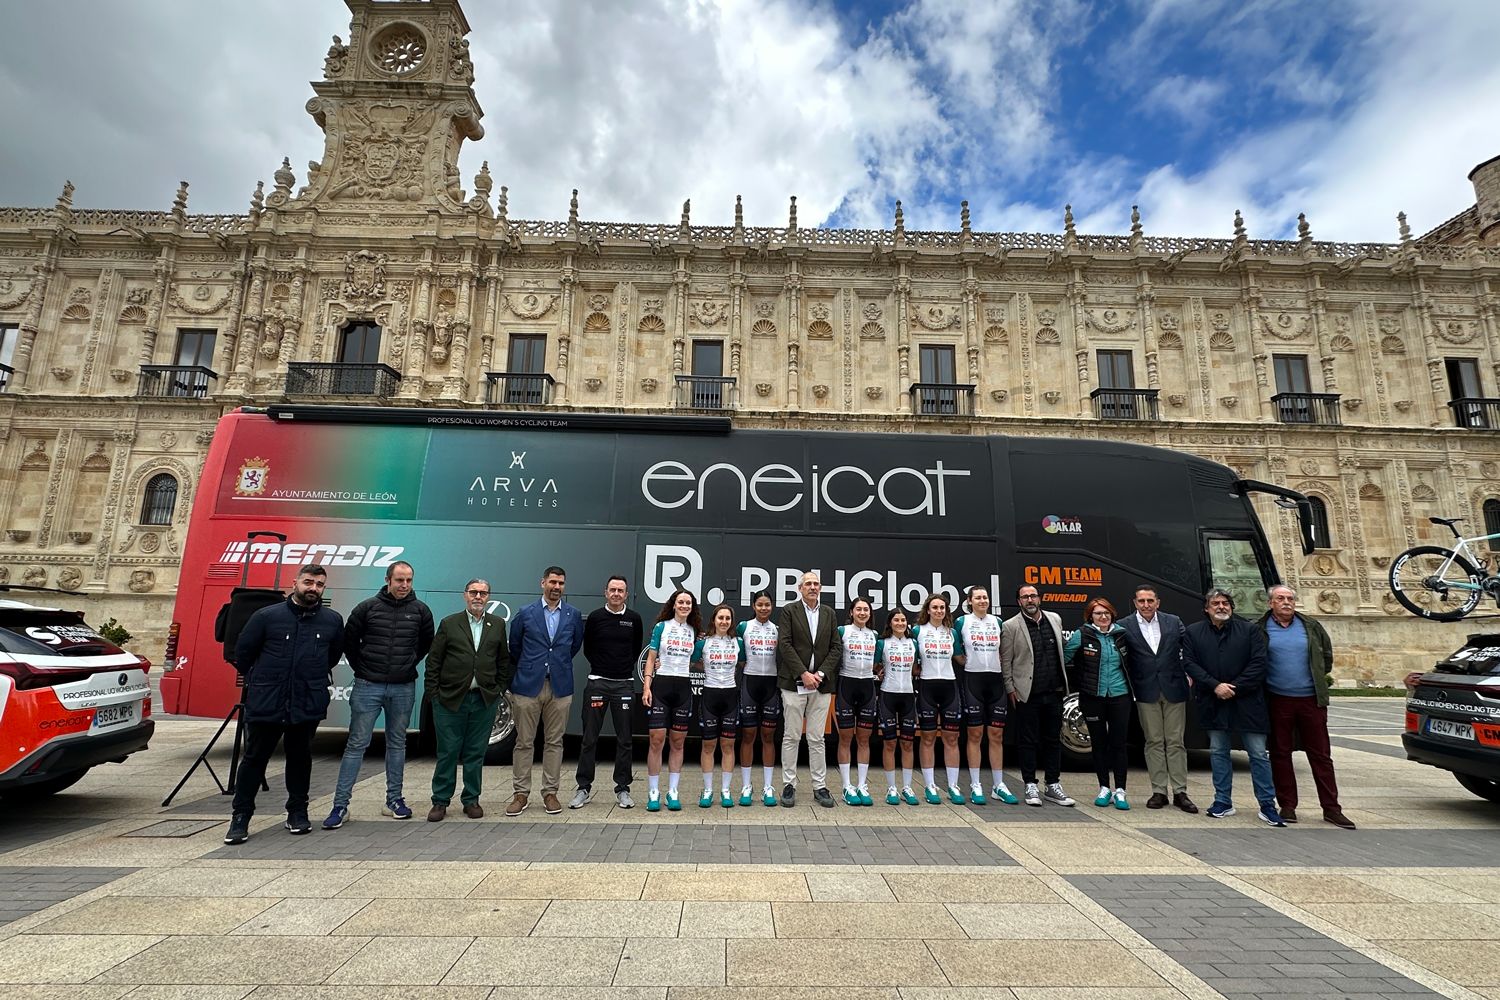 El deporte leonés competirá en La Vuelta Femenina gracias al Eneicat-CM Team